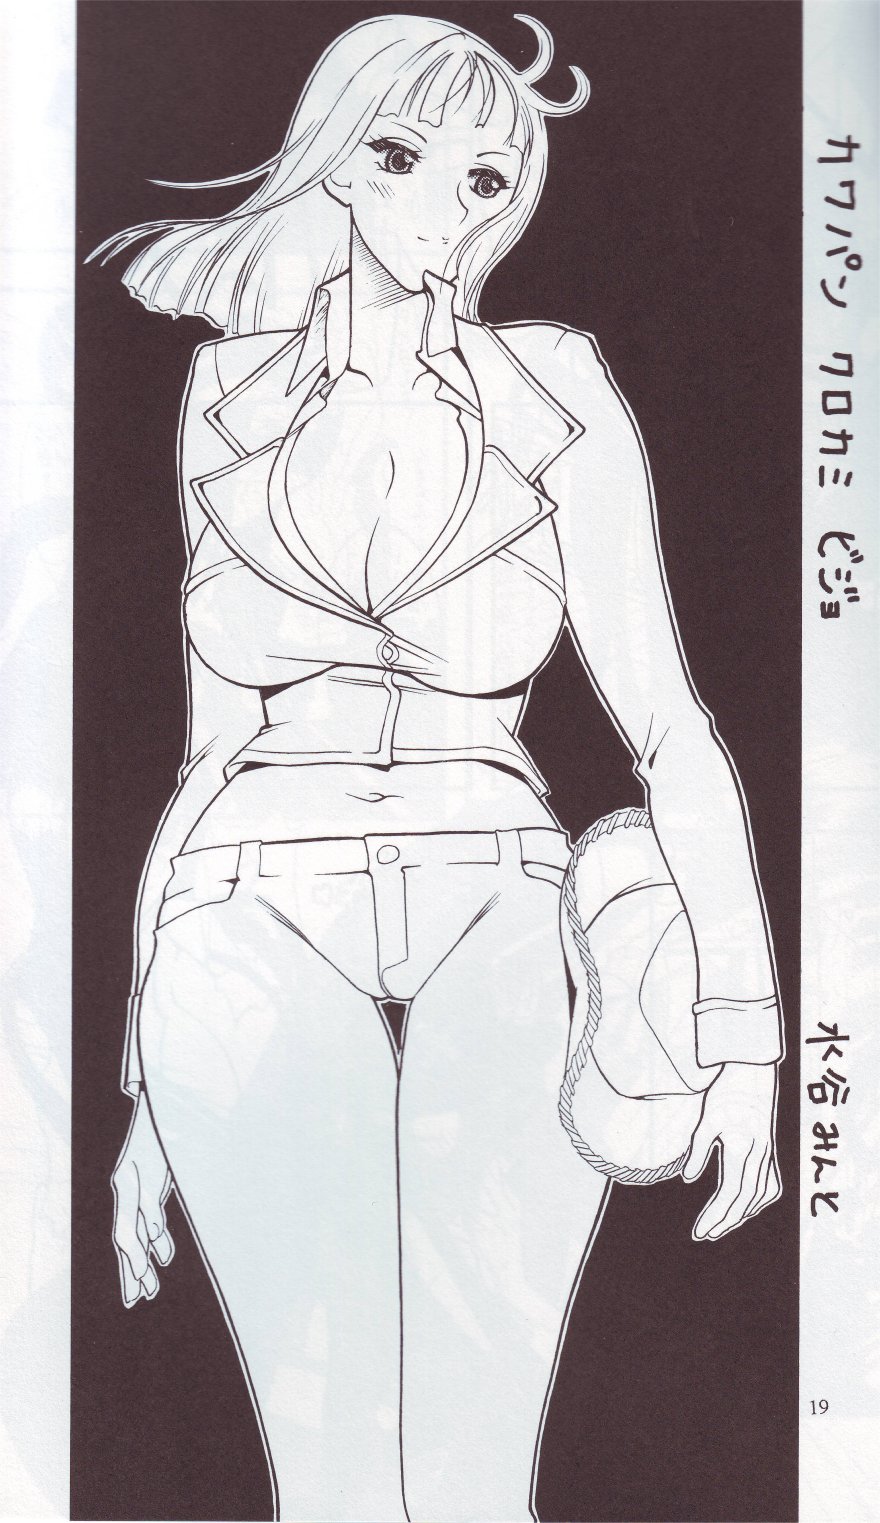 [SEMEDAIN G (Mizutani Mint, Mokkouyou Bond)] SEMEDAIN G WORKS vol.24 - Shuukan Shounen Jump Hon 4 (Bleach, One Piece) - Page 18